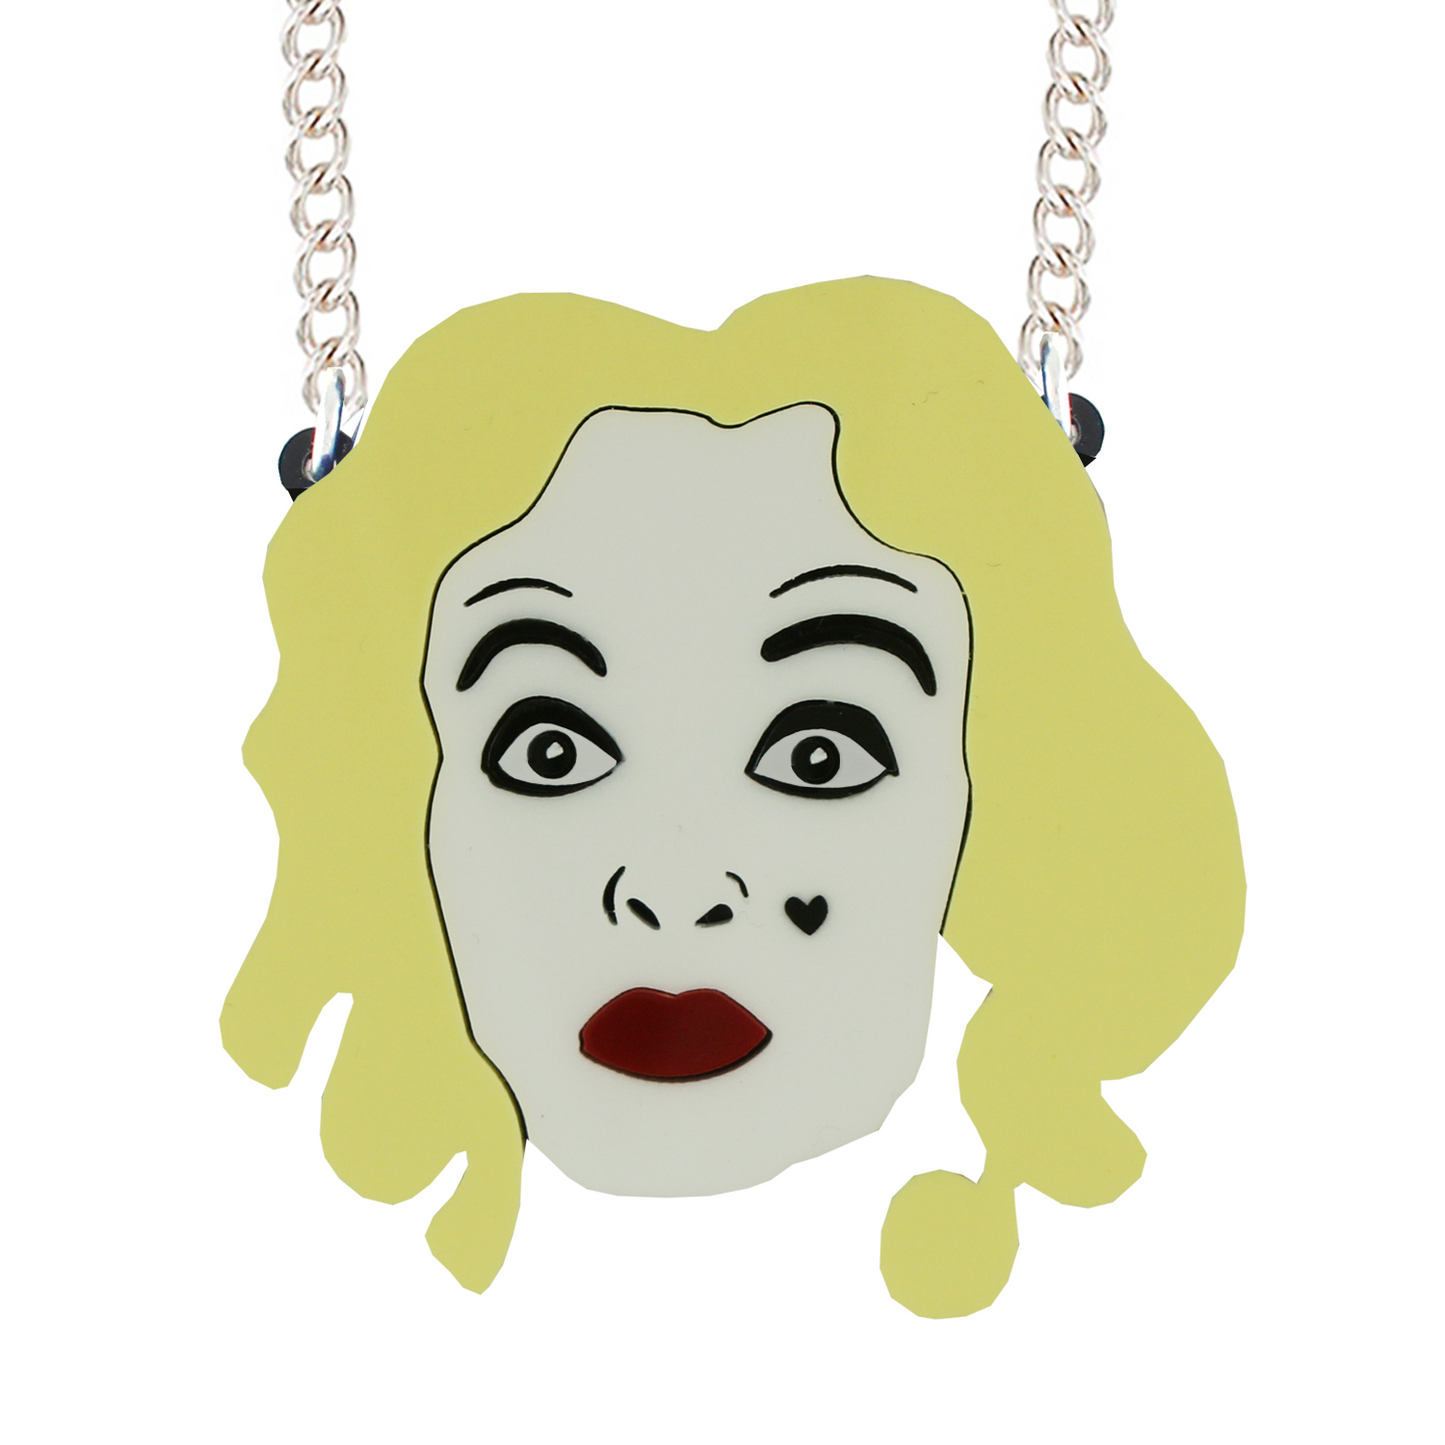 Bette Davis Baby Jane necklace